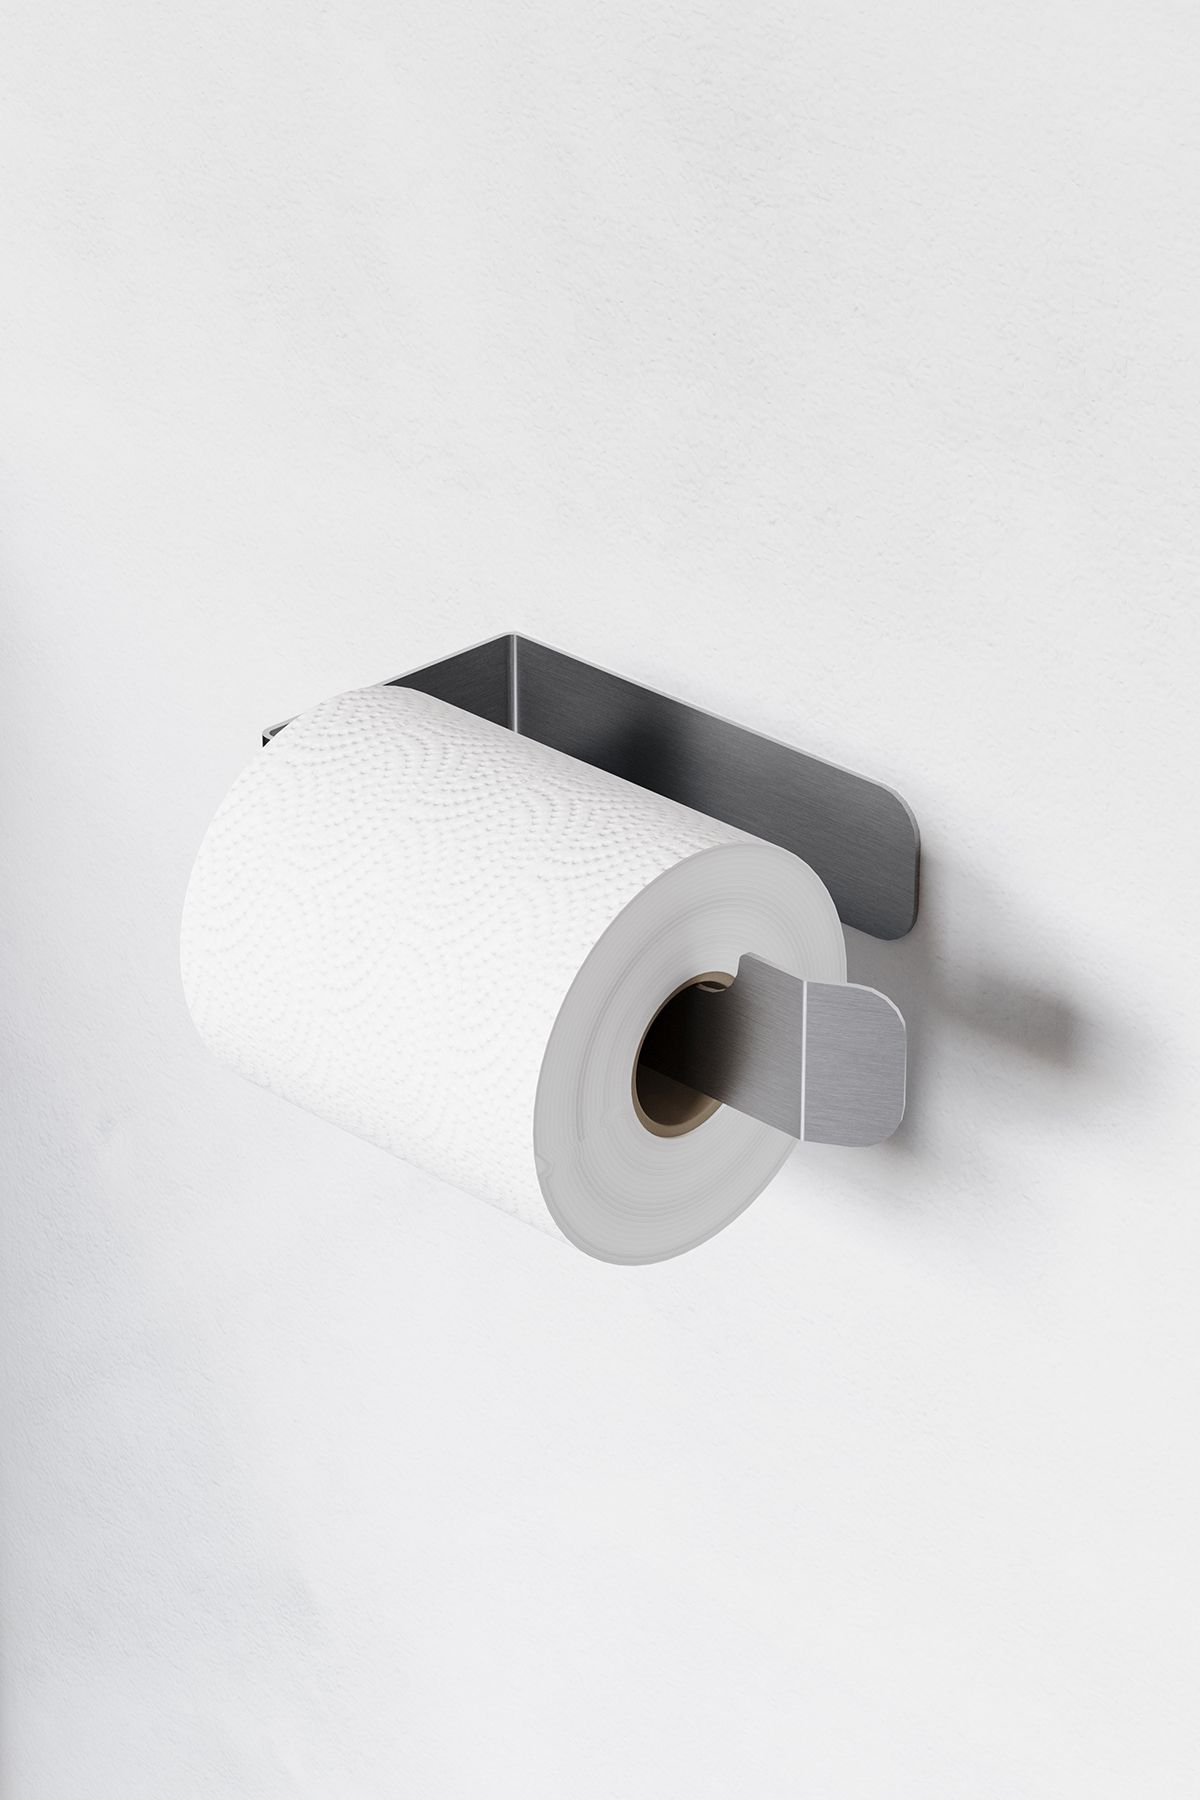 Zift Unique Paslanmaz Çelik Tuvalet Kağıdı Askısı , Yapışkanlı WC Kağıdı Standı , Tuvalet Kağıtlık